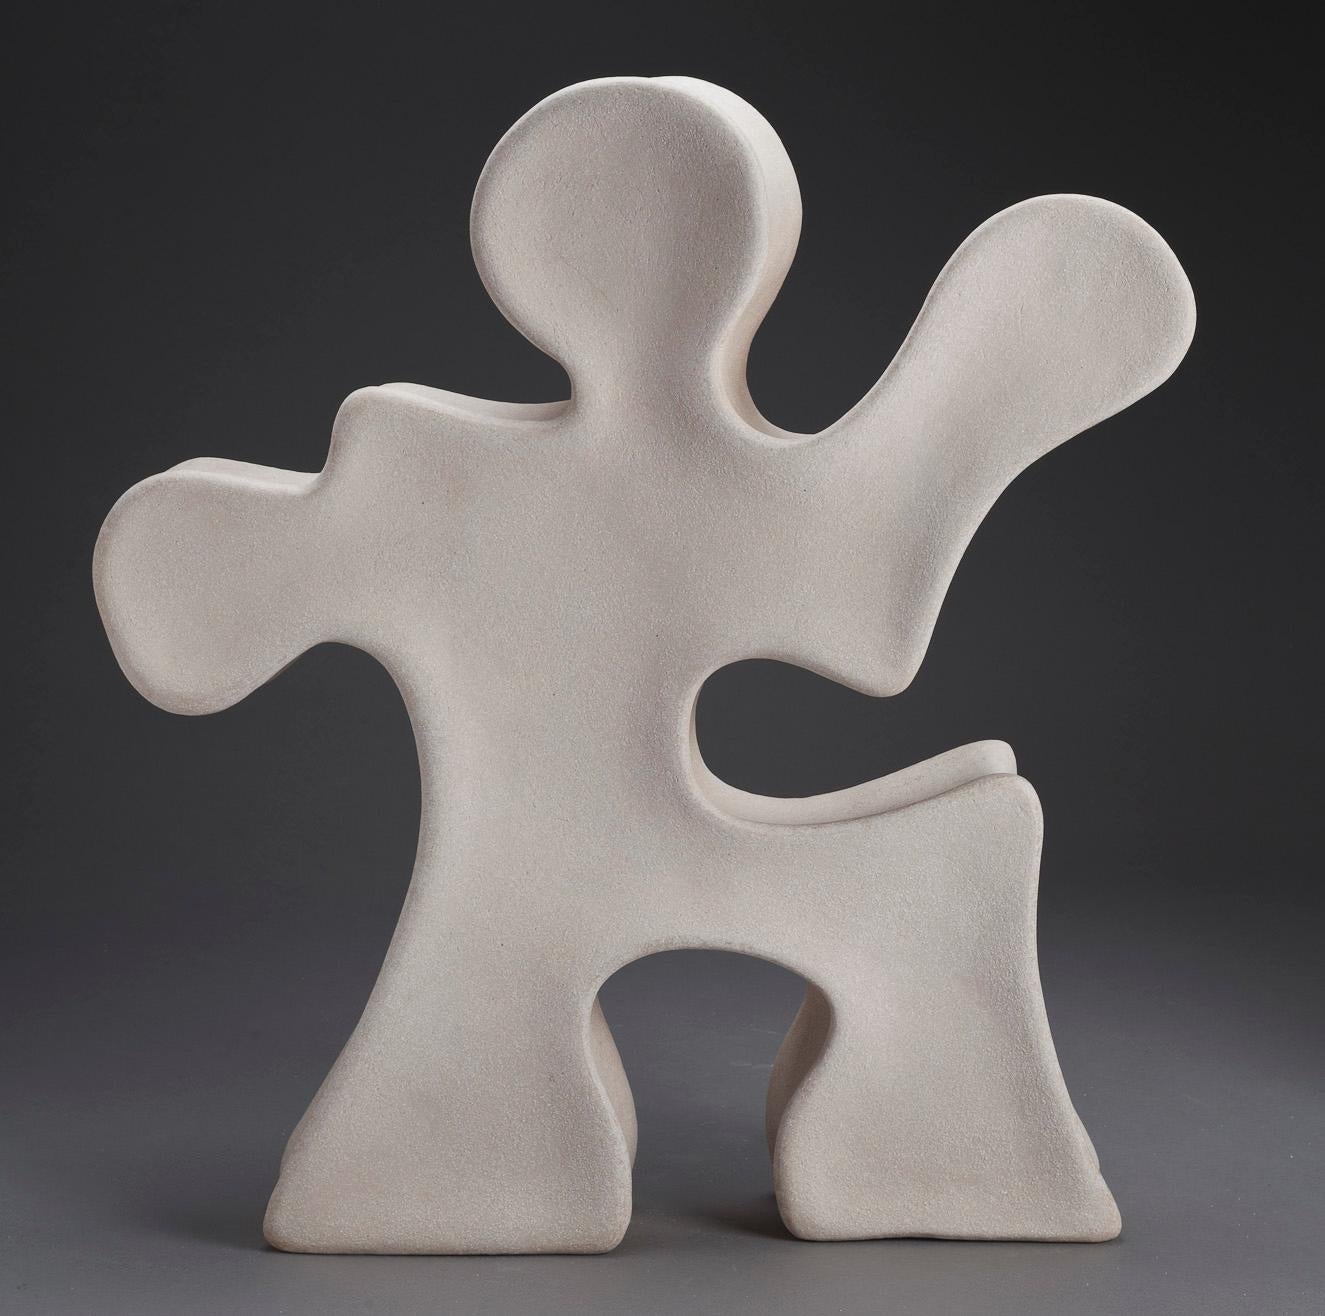 Steve Cartwright, Jigsaw Man

Handgefertigte Bildhauerkeramik, Steinzeug Ton, gebrannt bis 1250c

Höhe von 48cm (18.9 in)

Auflage von 5 Stück pro Jahr